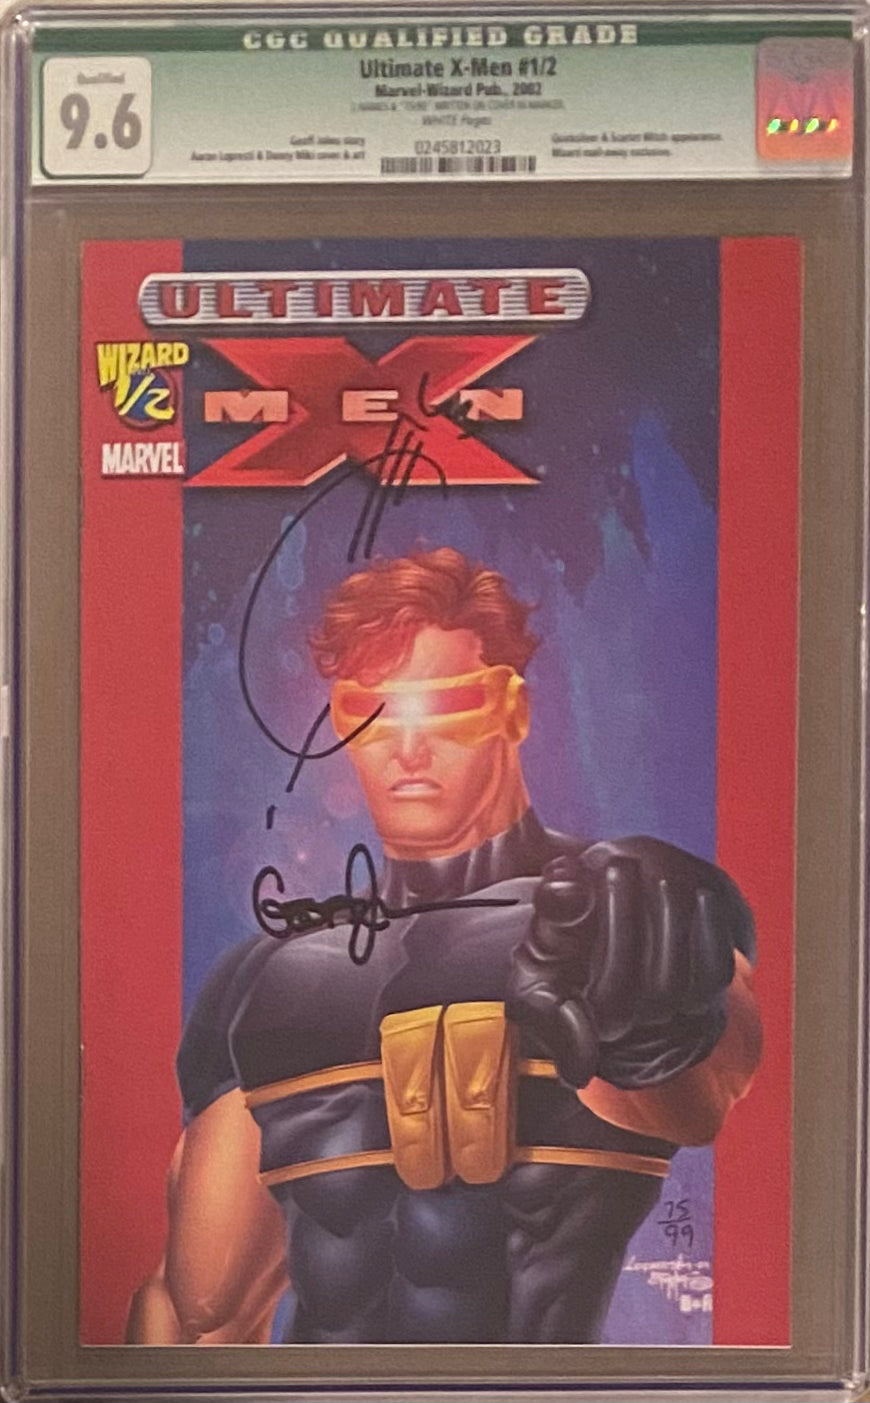 Ultimate X-Men #1/2 CGC 9.6 Qualified